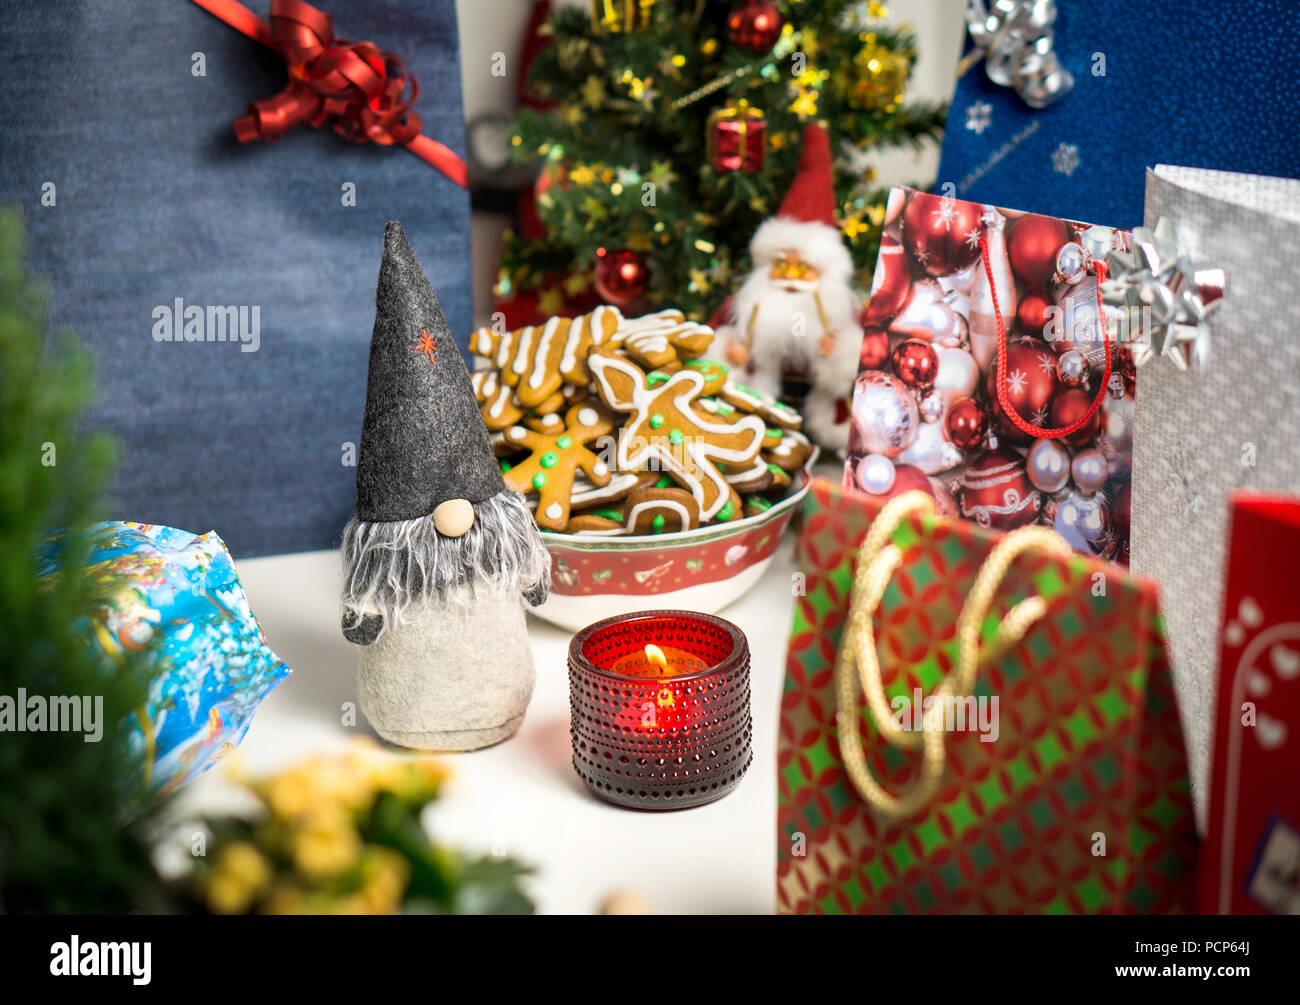 Weihnachten Dekorationen und Geschenke auf dem Tisch. Little Santa Claus, Weihnachtsbaum, Kerzen und Lebkuchen. Urlaub noch leben Layout. Stockfoto